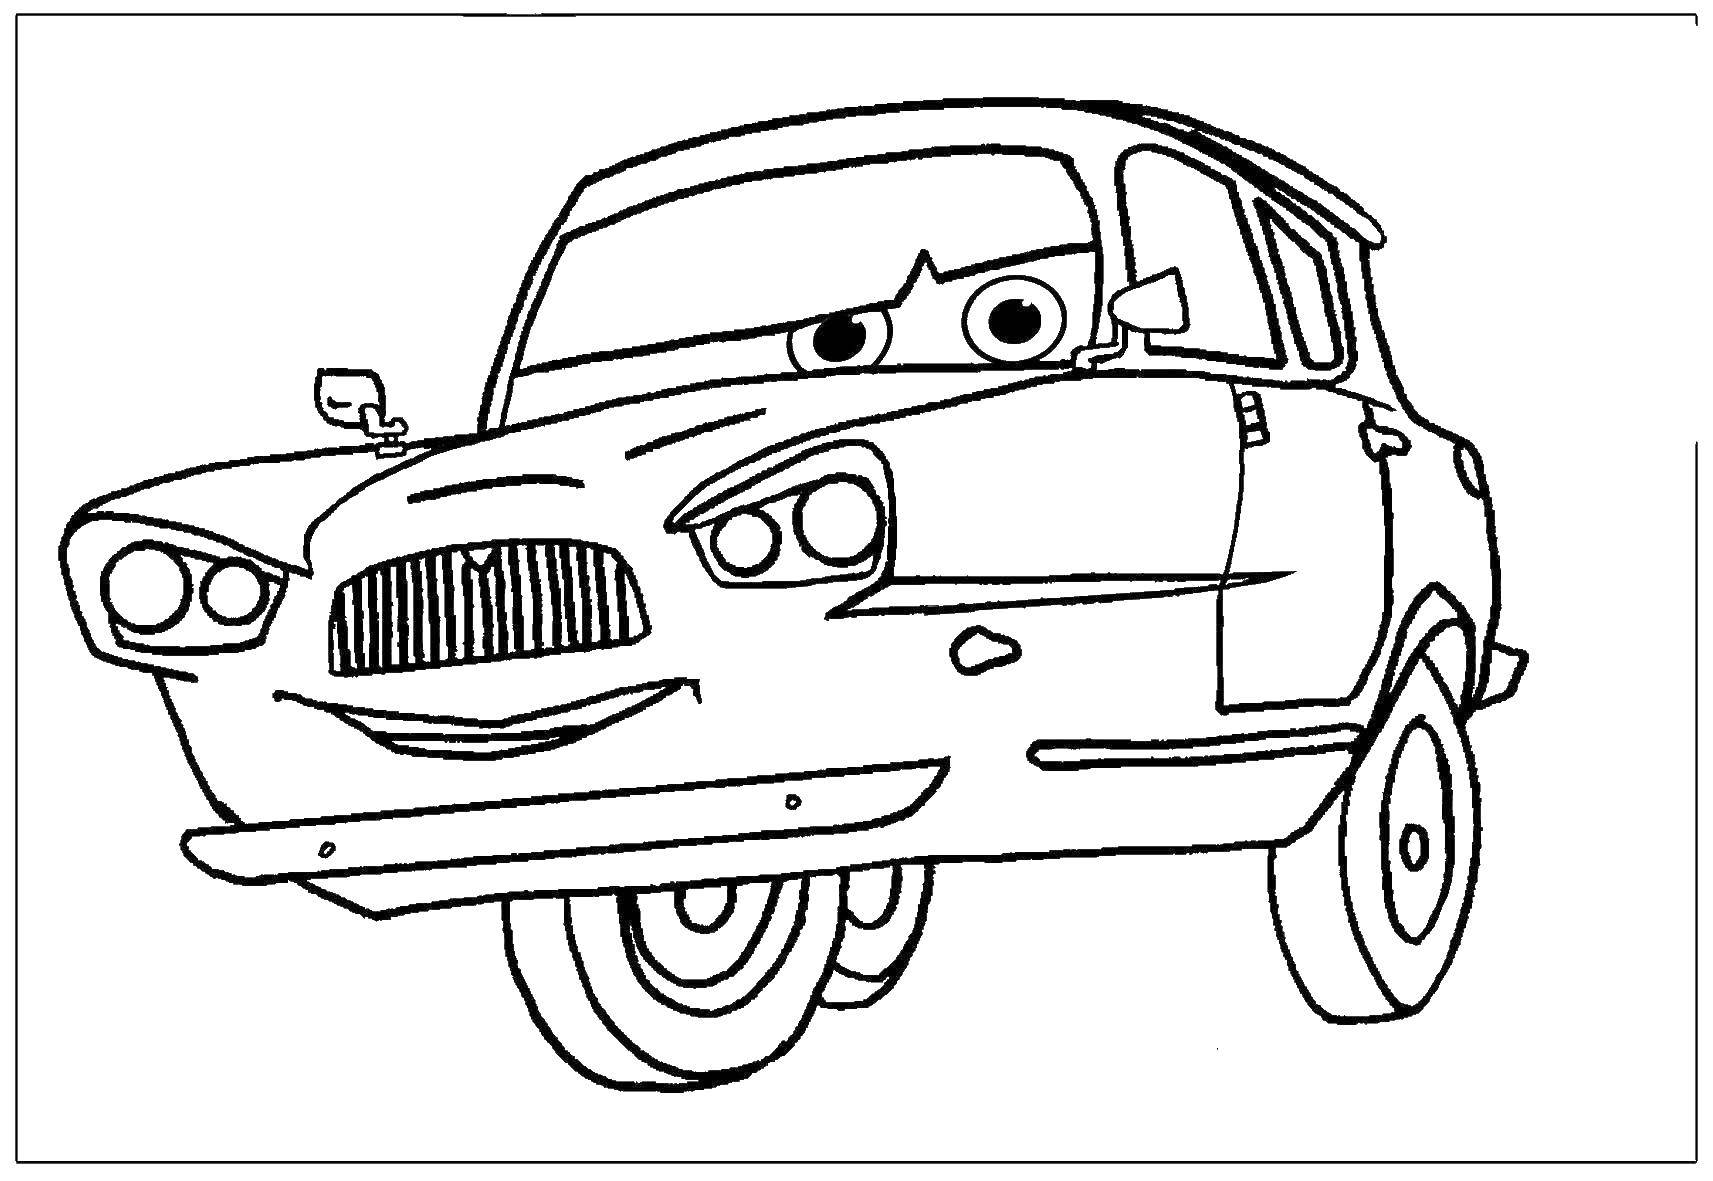 Название: Раскраска Тачки. Категория: Машины. Теги: мультфильмы, Тачки, машины.